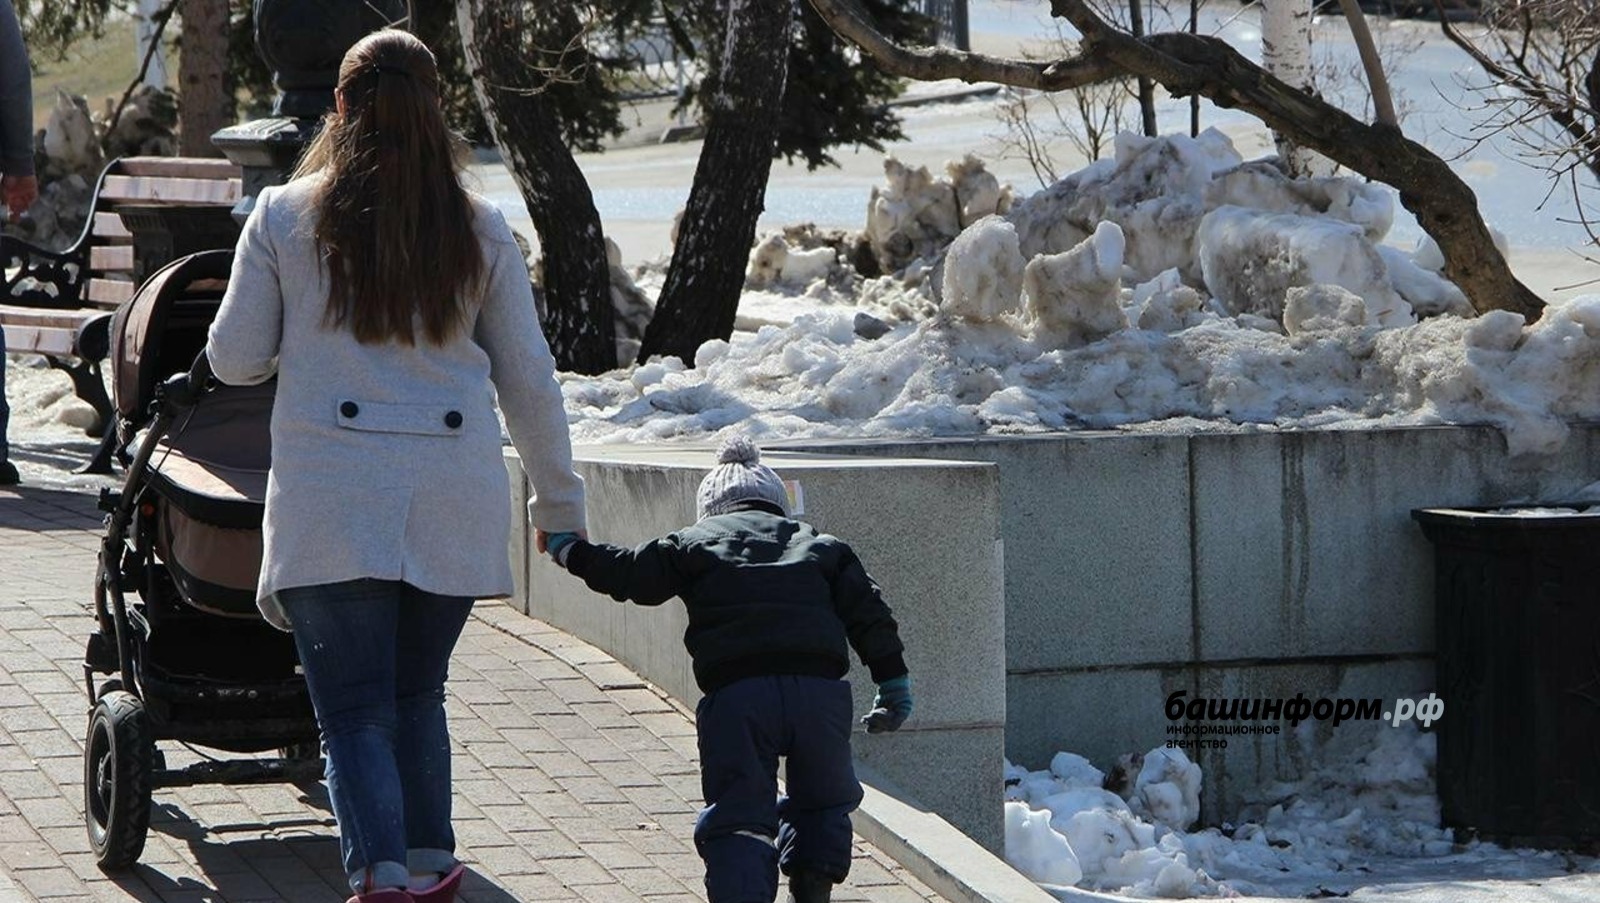 В Башкортостане появился чат-бот по пособиям на детей до 17 лет